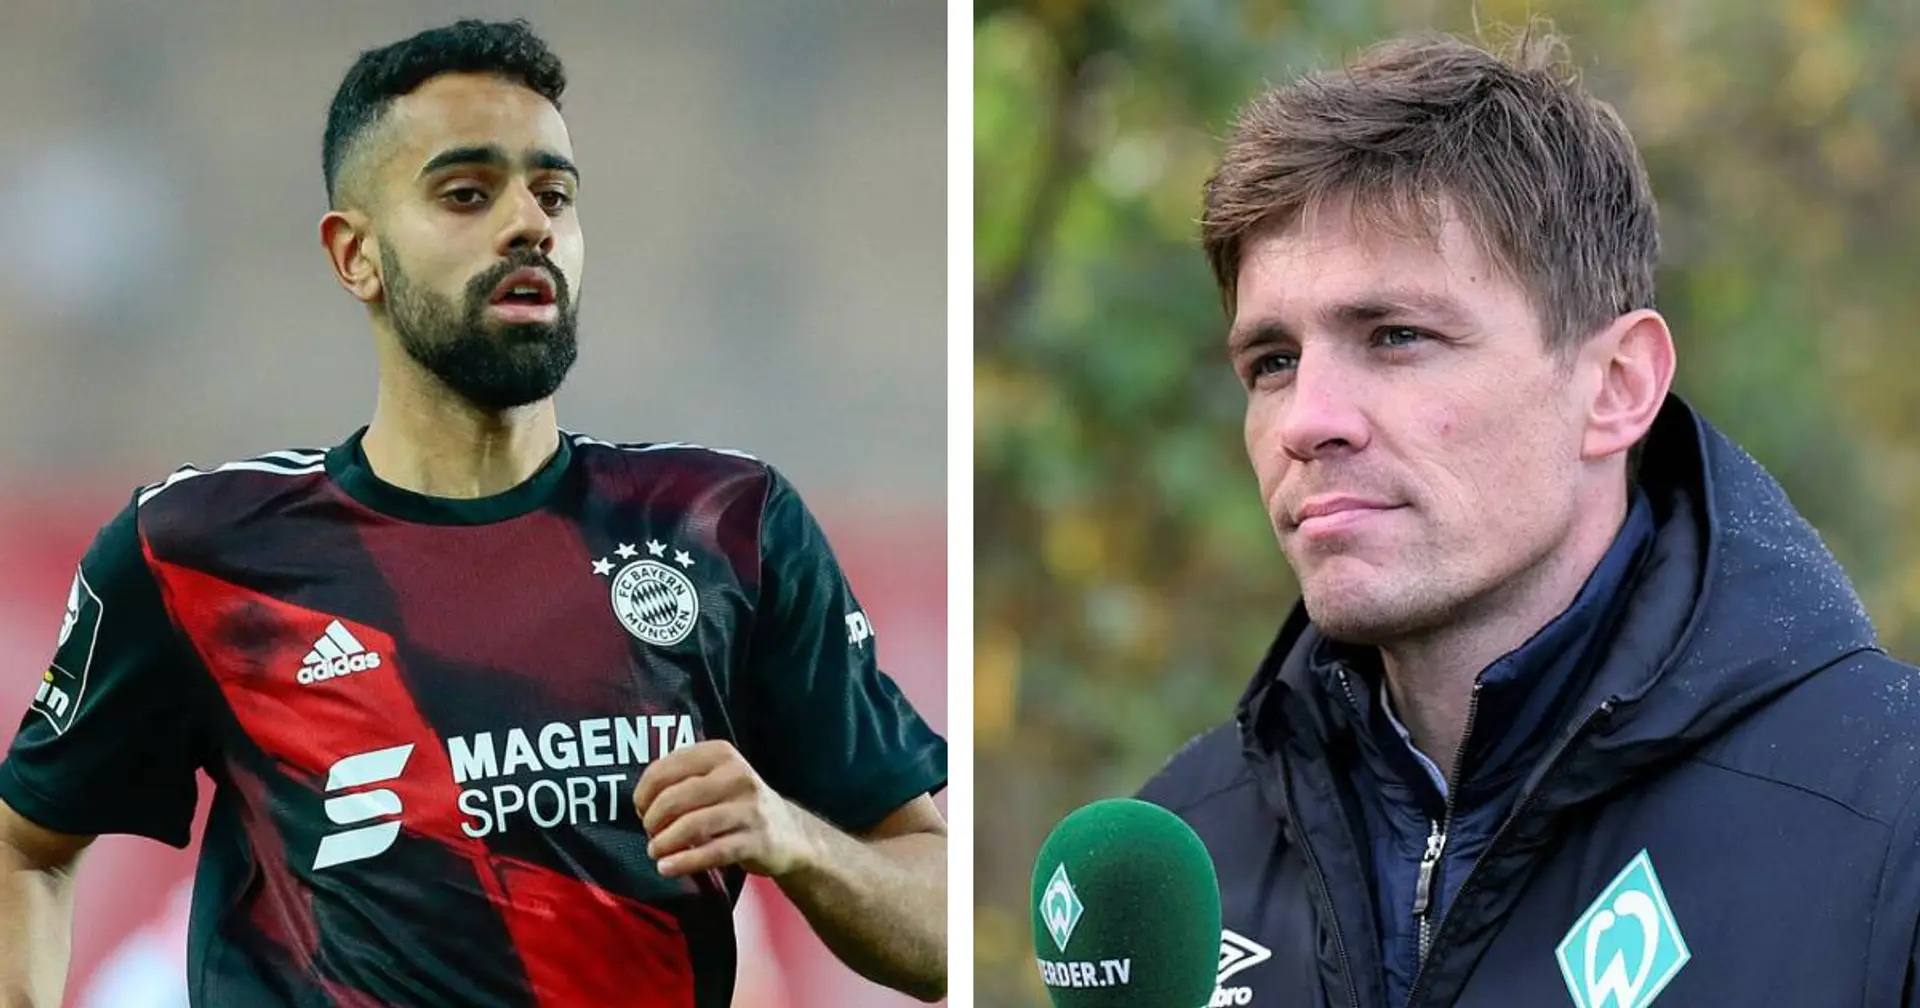 "Schade, da er ein interessanter Spieler ist": Werder bestätigt, dass Singh-Transfer geplatzt ist